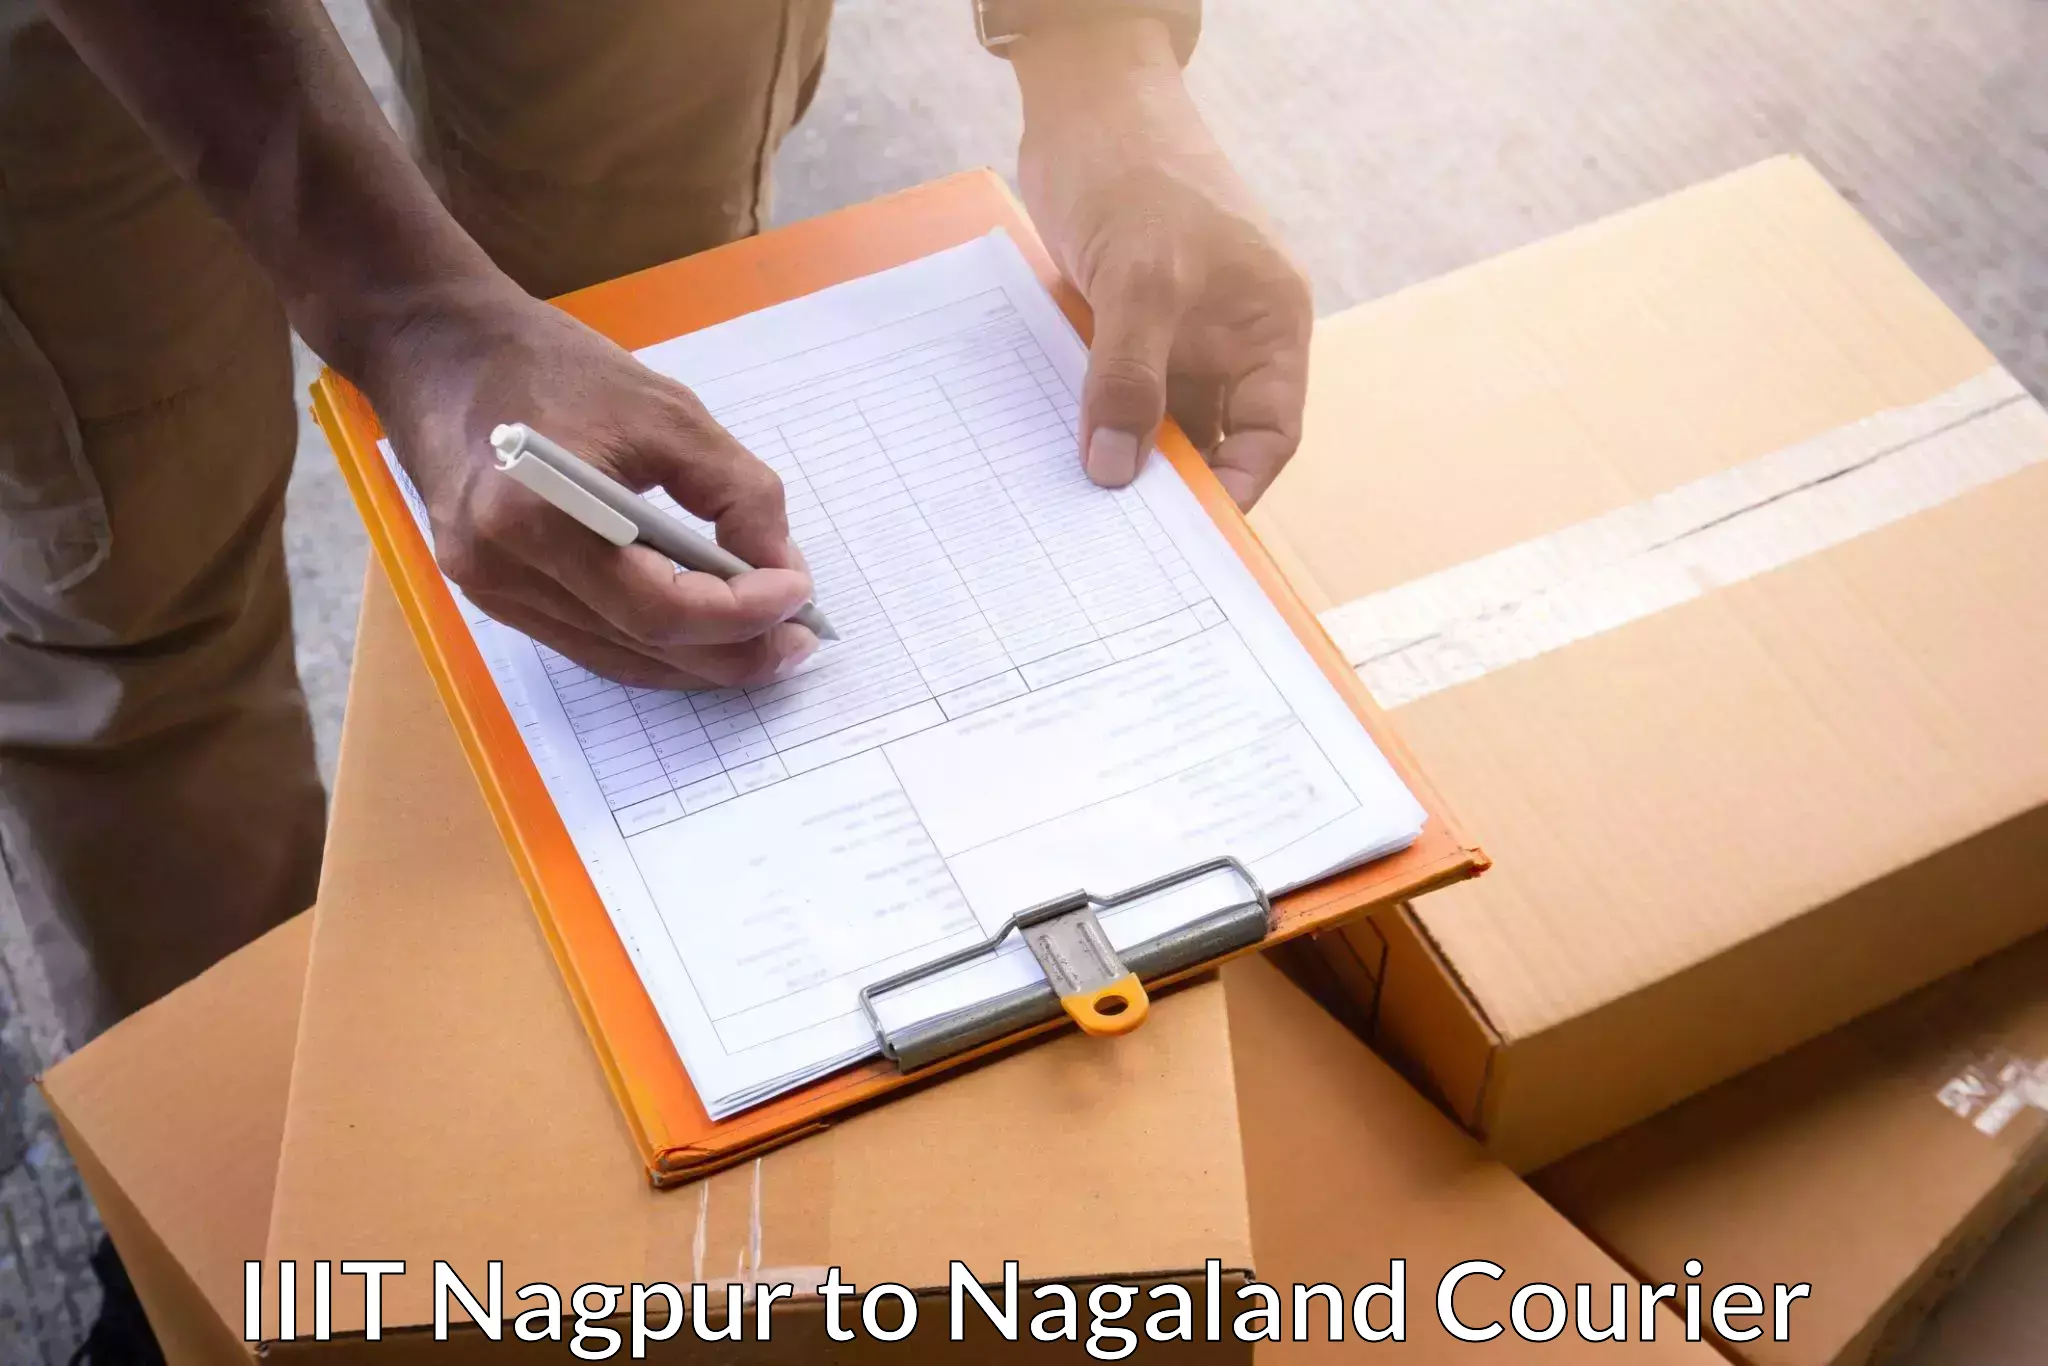 Customer-focused courier IIIT Nagpur to Phek